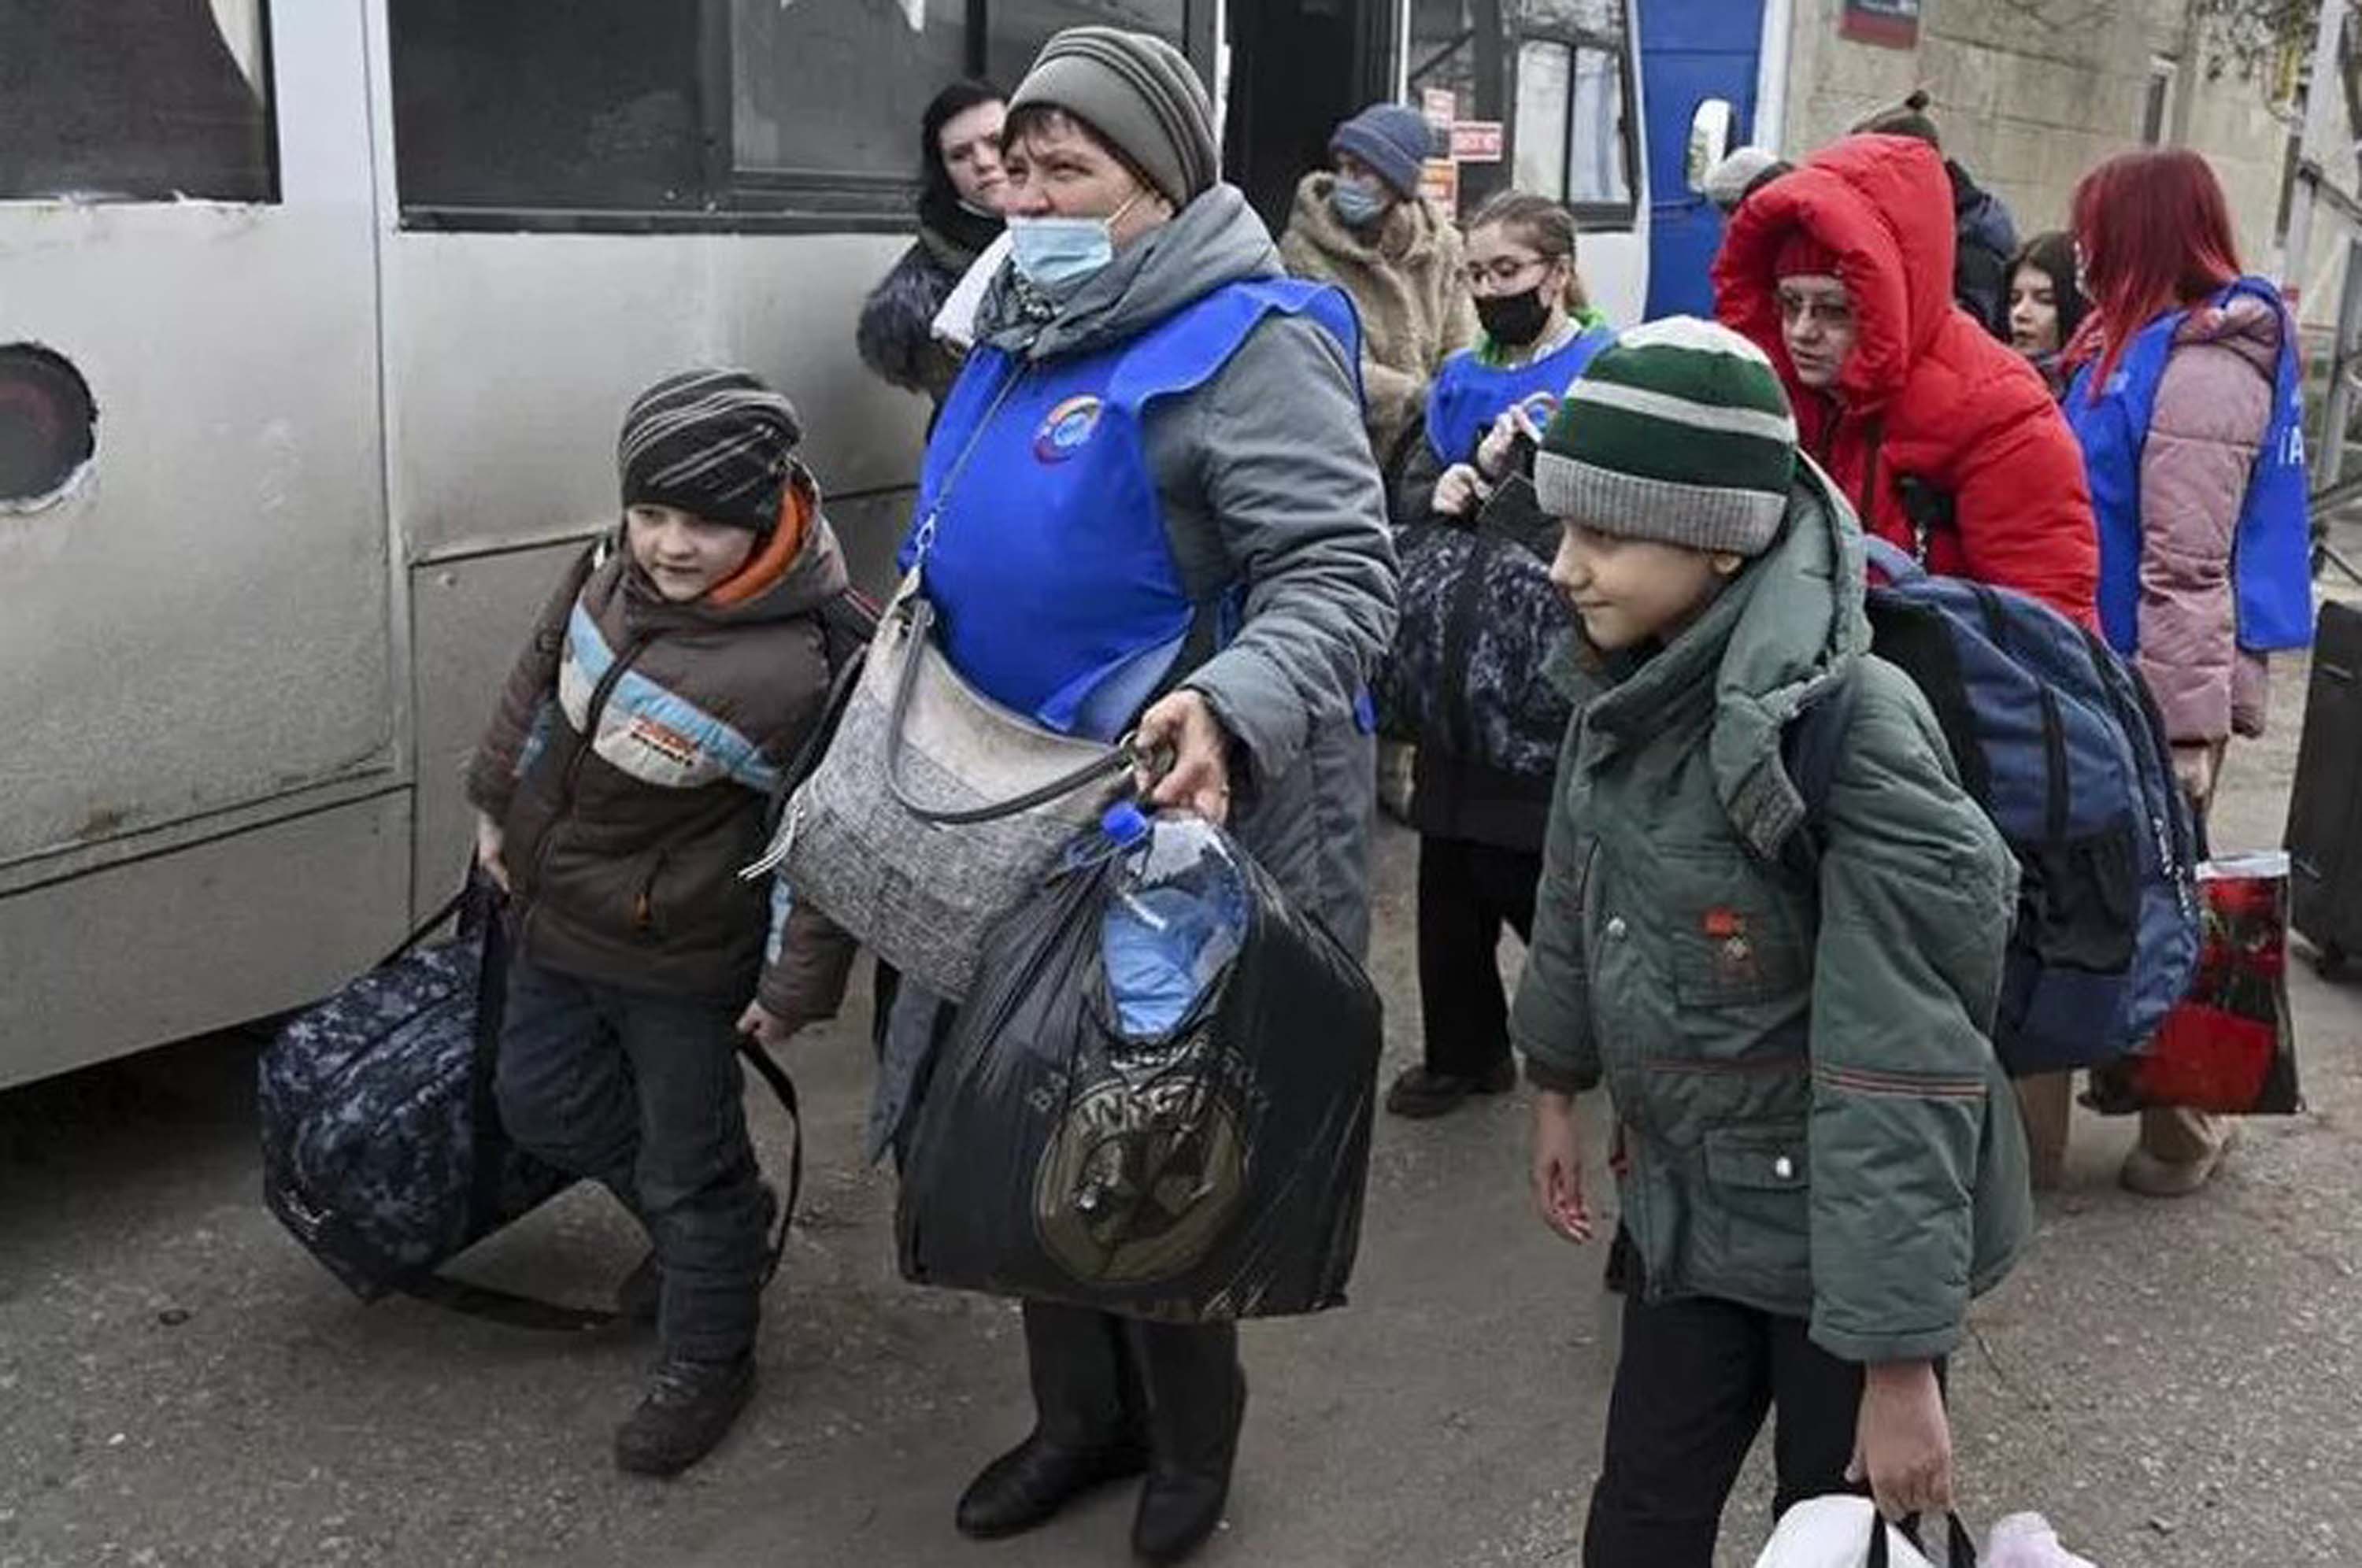 Suriyeli mültecilere tahammülü olmayan Avrupa, Ukrayna için hazırlıklara başladı! İslam dünyasından tepkiler yükseldi!